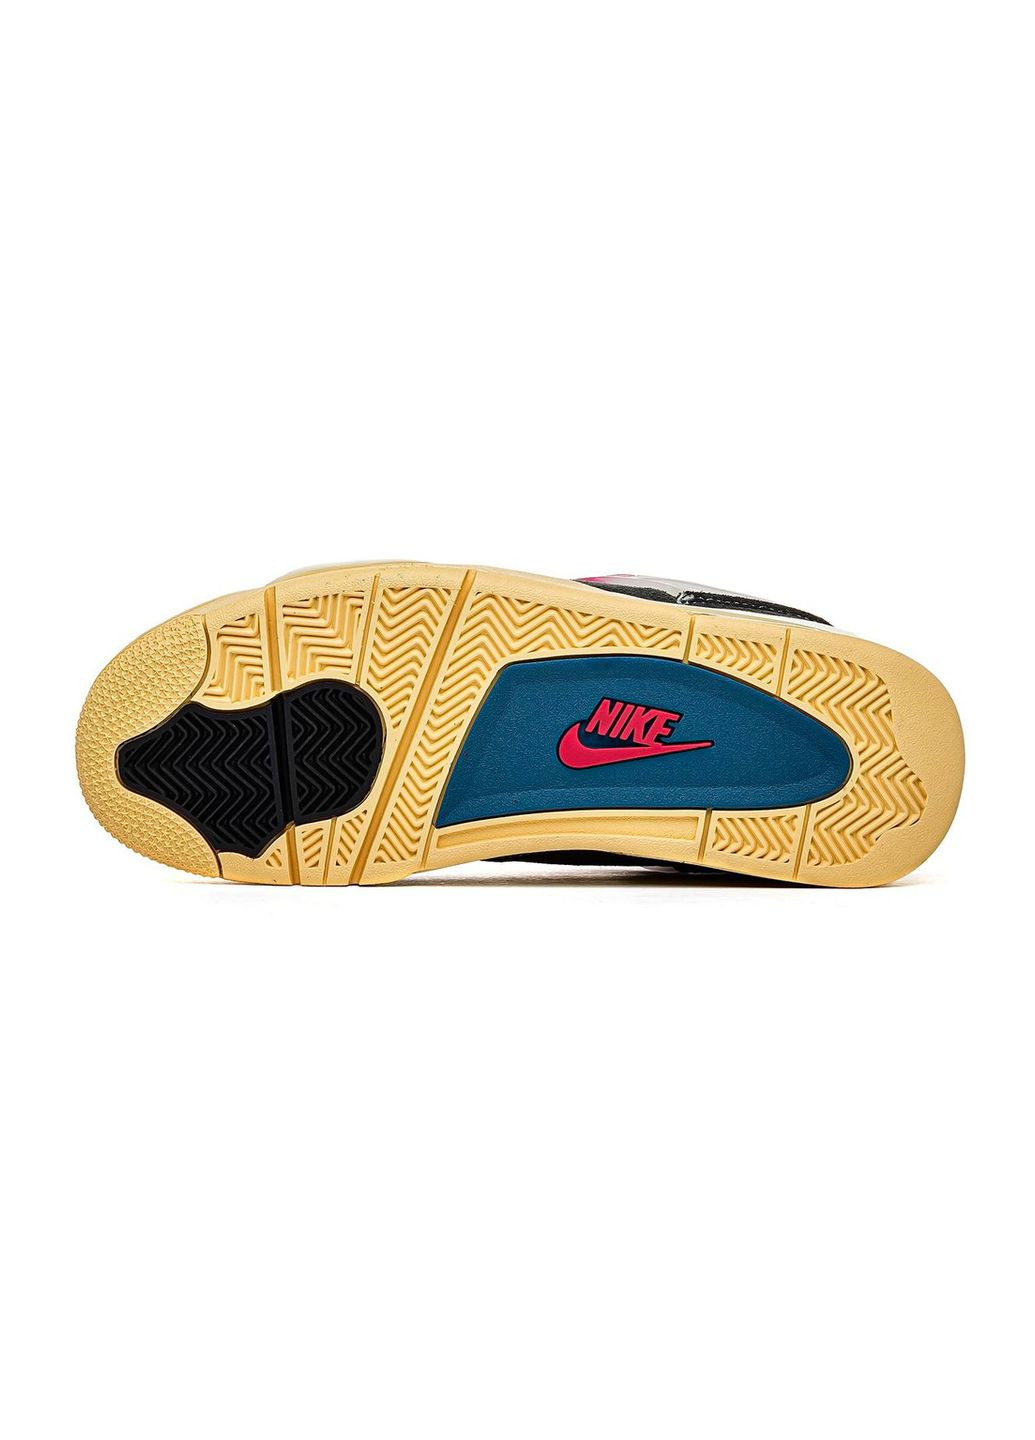 Цветные демисезонные кроссовки мужские off noir, вьетнам Nike Air Jordan 4 Retro